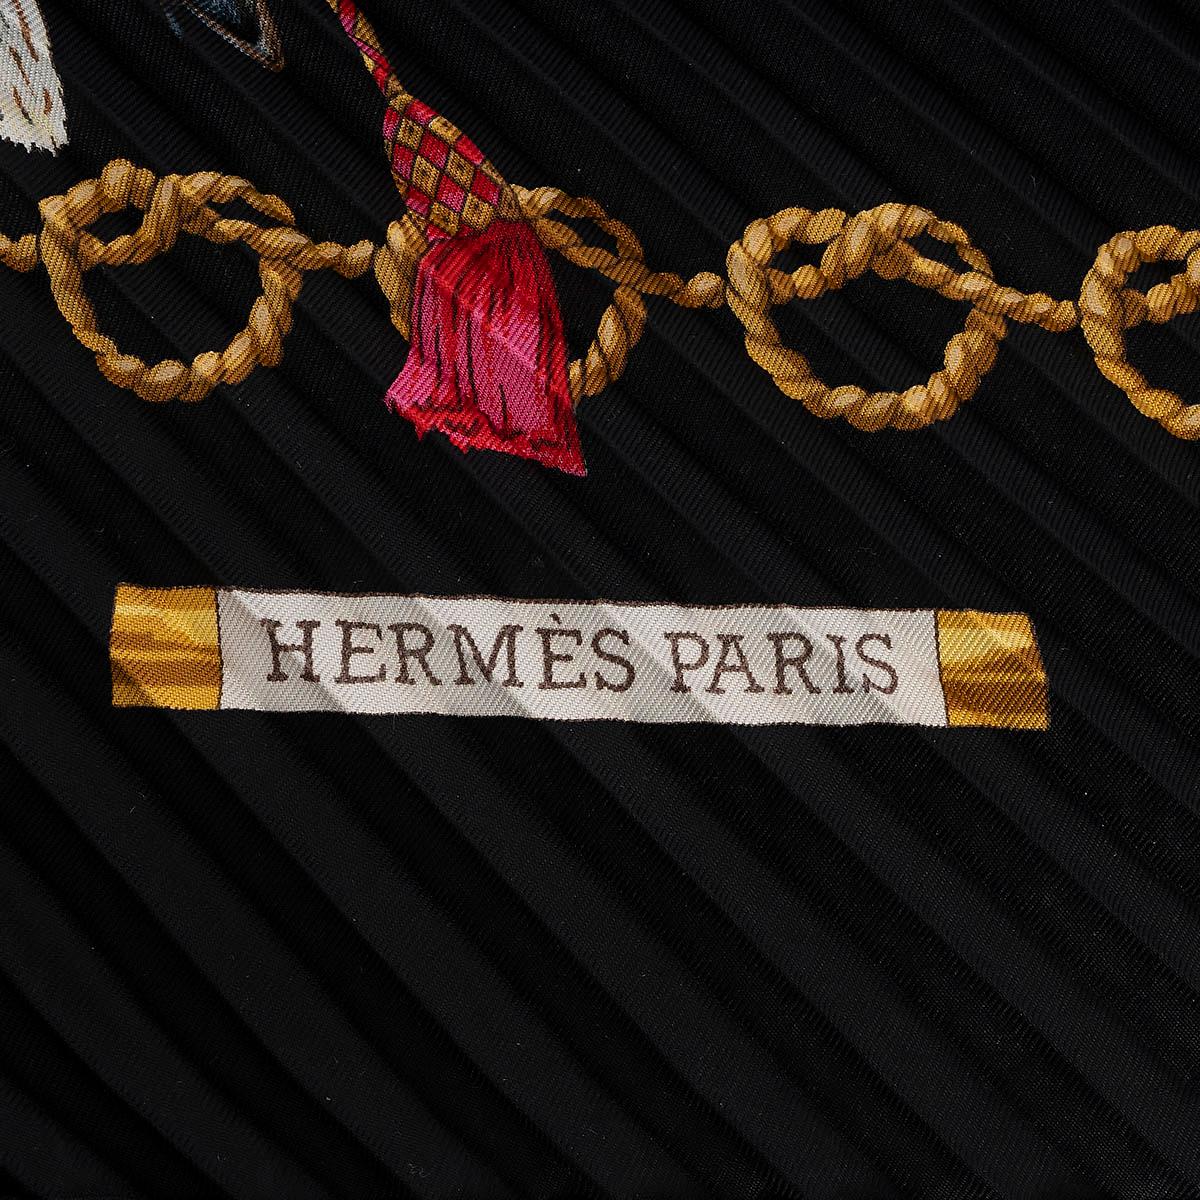 100% authentischer Hermès Les Oiseaux du Roy 90 Plissee-Schal aus Seide in Schwarz mit Details in Gold, Grau, Blau und Rot. Wurde getragen und ist in ausgezeichnetem Zustand. Wird mit Box geliefert. 

Messungen
Breite	90cm (35.1in)
Länge	90cm